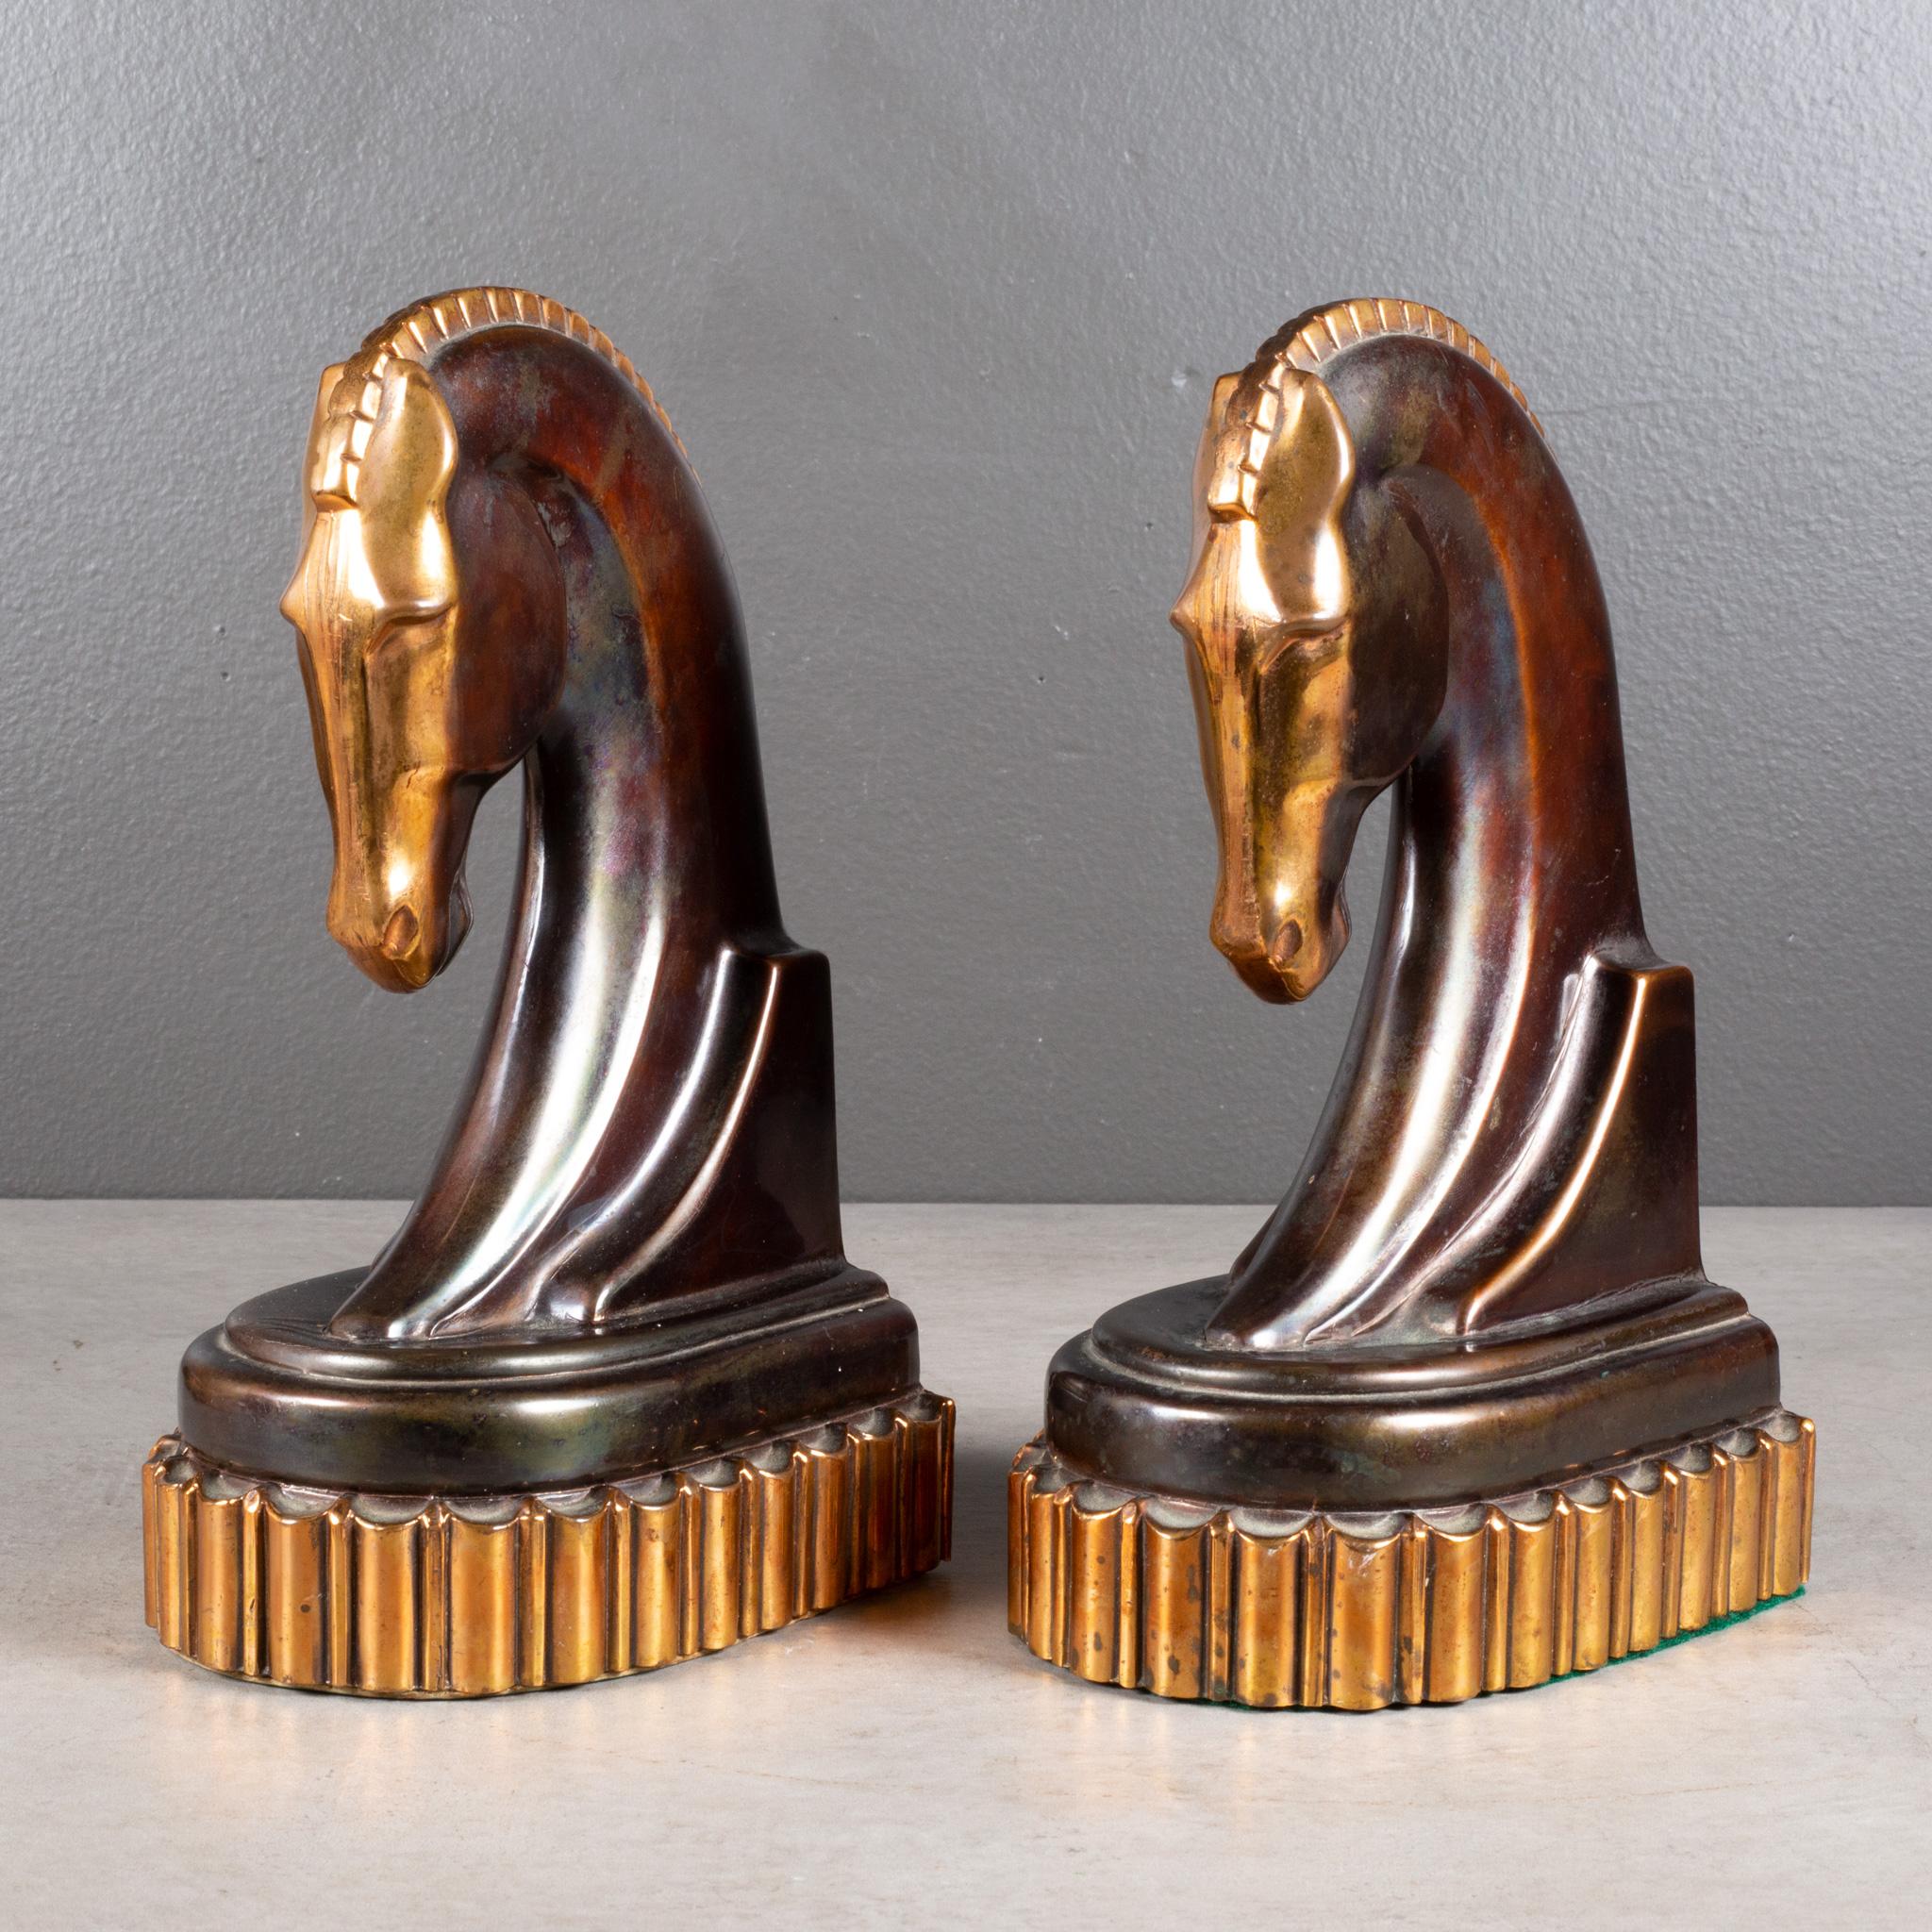 À PROPOS DE

Une paire surdimensionnée de serre-livres Art Déco en bronze et en cuivre plaqué en forme de cheval de Troie sur un épais socle plaqué en cuivre. Fond et étiquette d'origine sur un serre-livre.

Représenté avec un modèle manuel grandeur